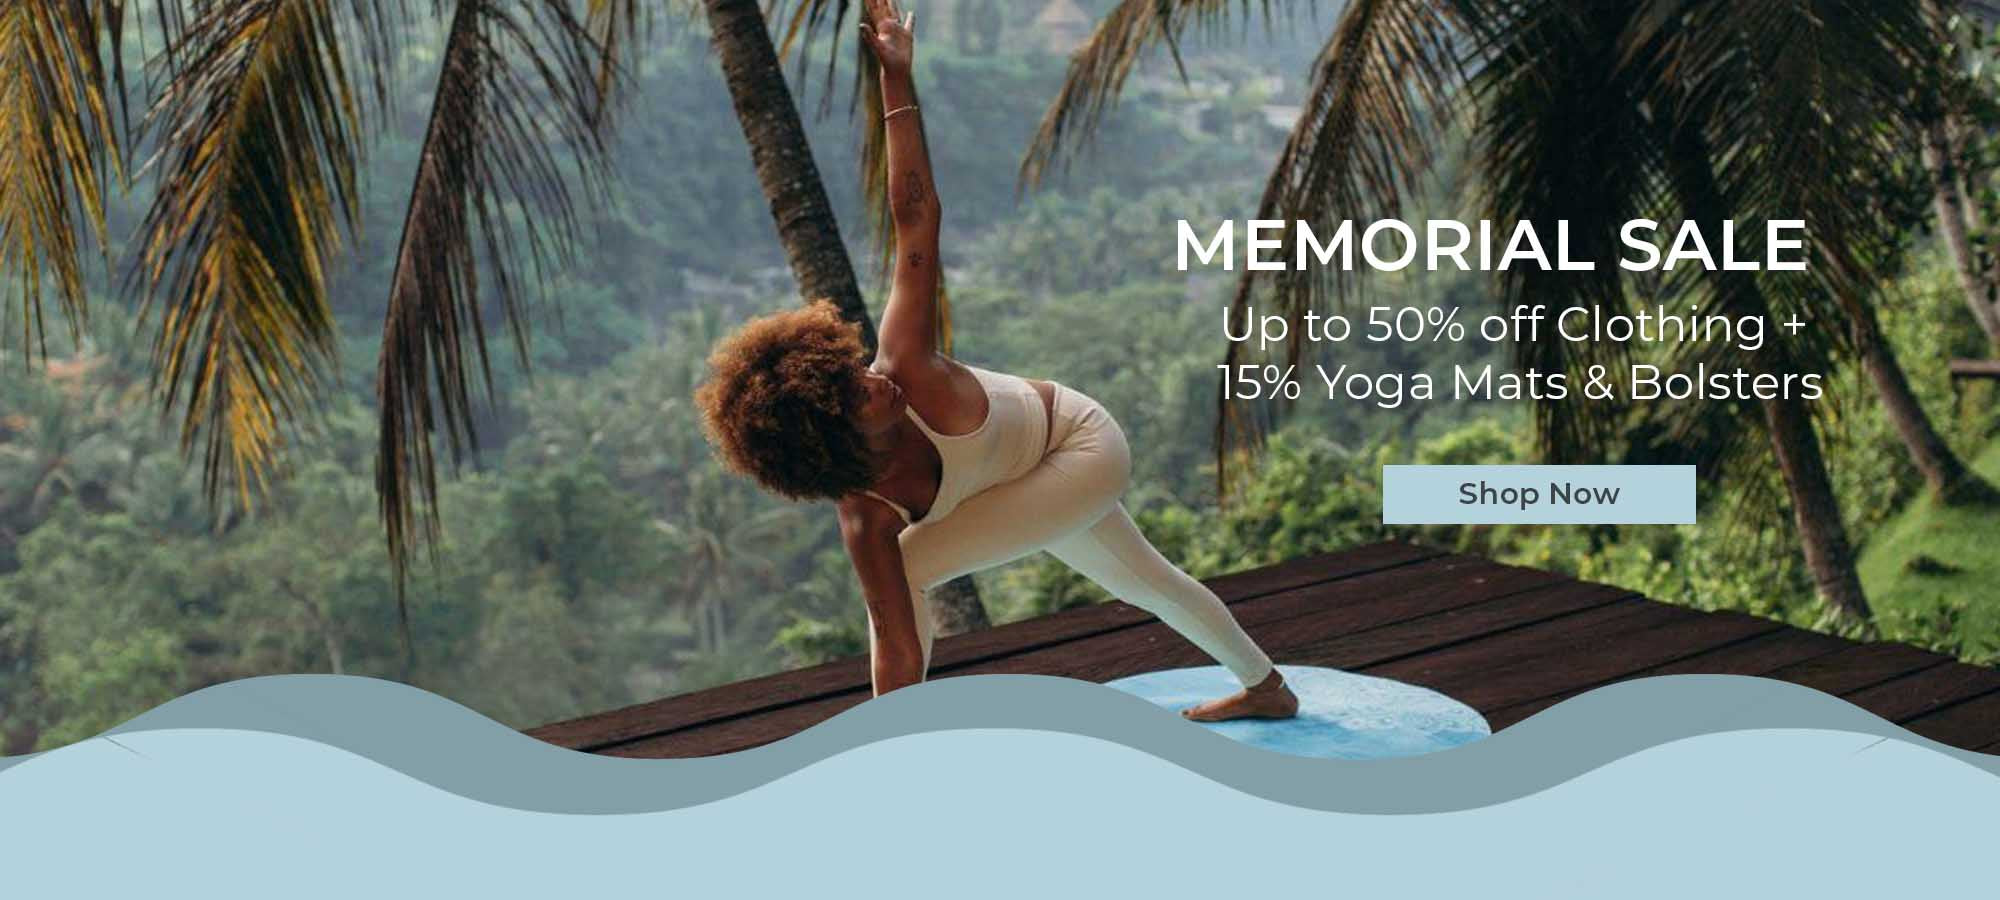 Memorial Sale - Mukha yoga